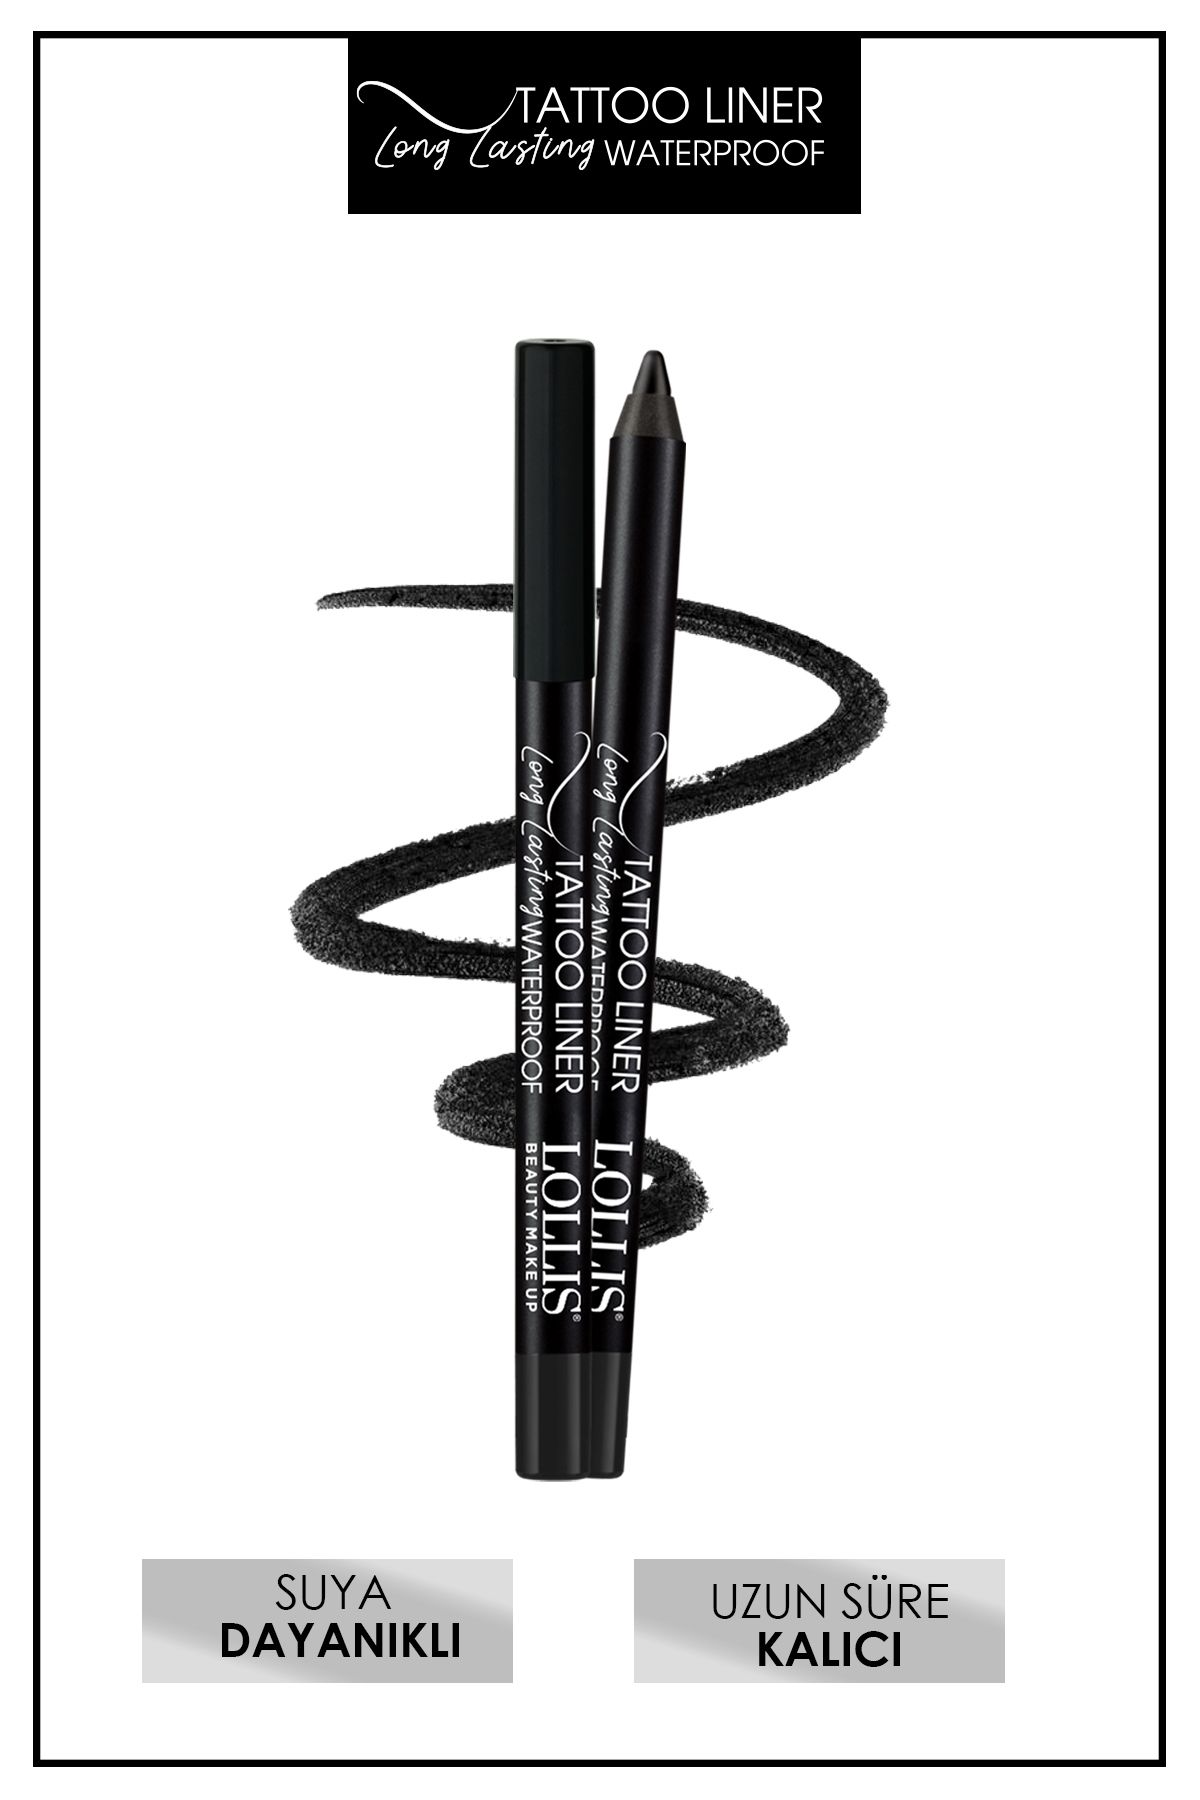 Lollis Uzun Süre Kalıcı Suya Dayanıklı Siyah Göz Kalemi 501 / Tattoo Liner Long Lasting Waterproof Black